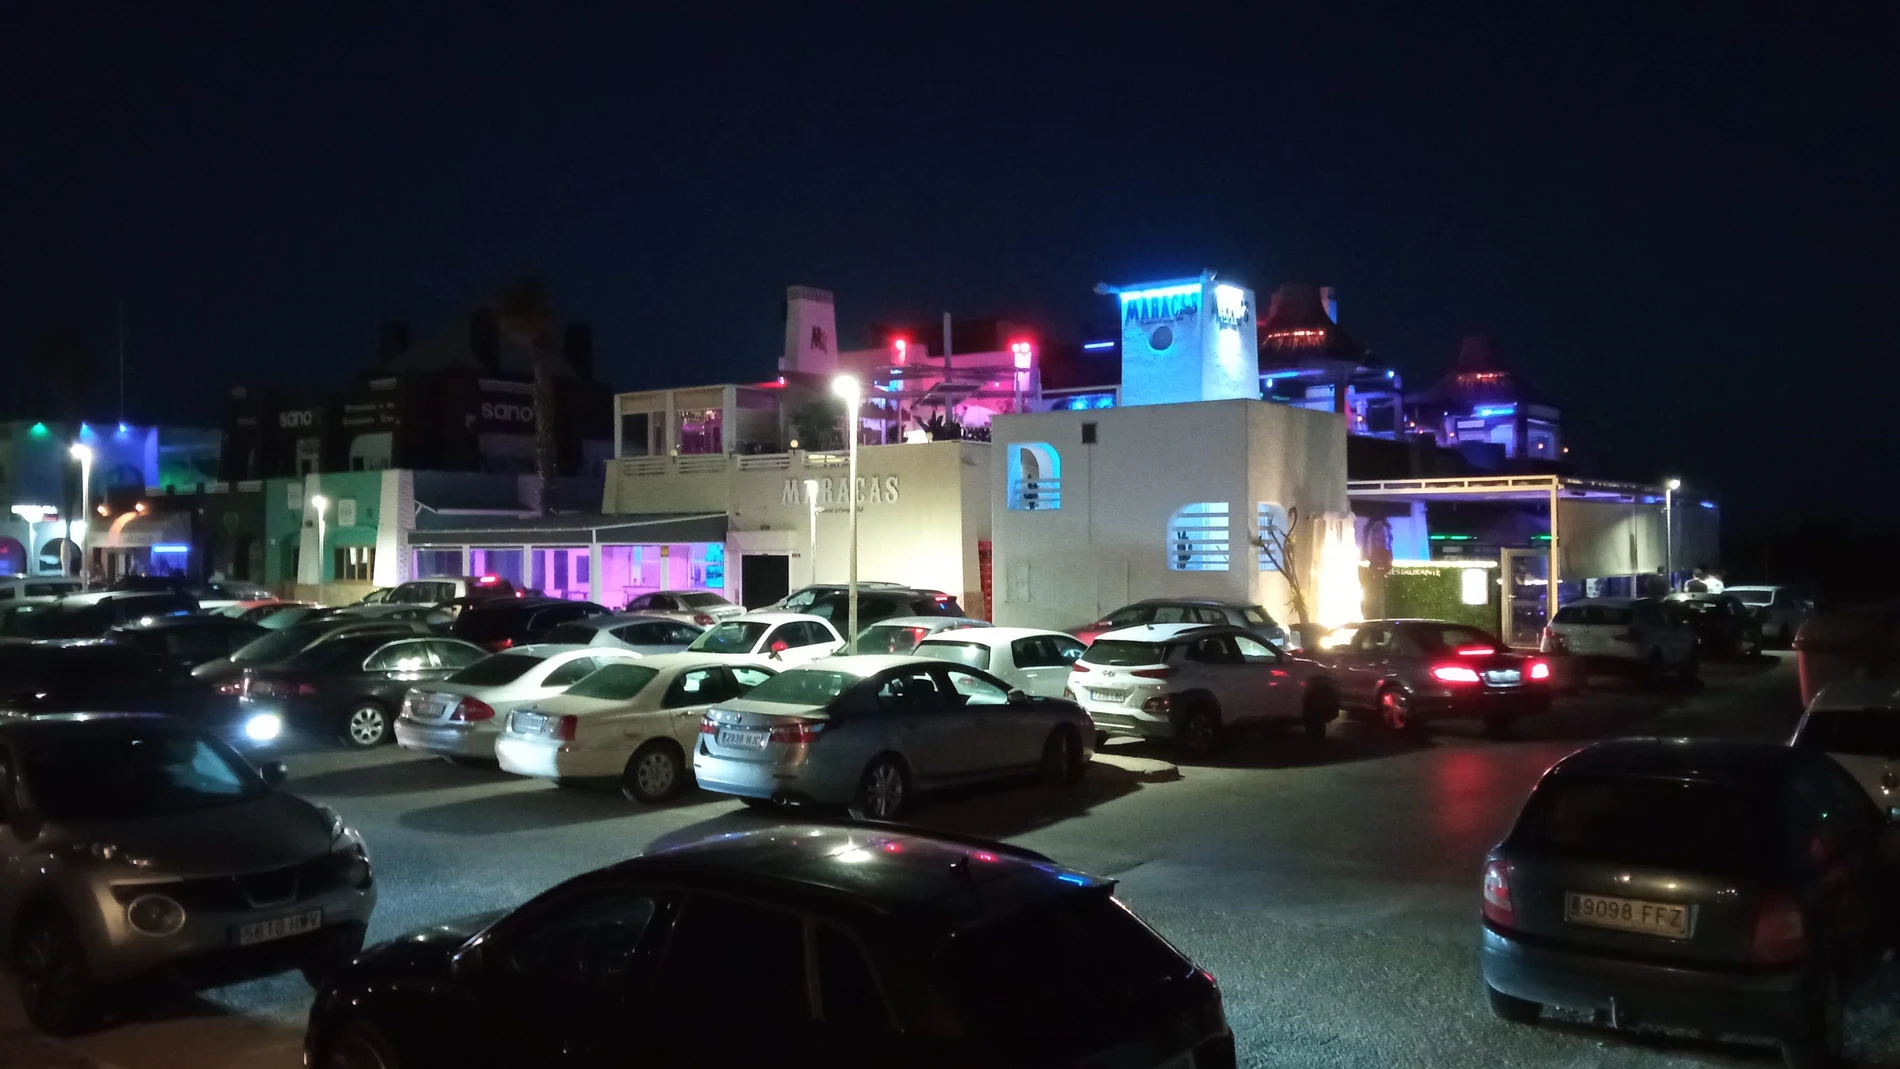 Complejo pubs, discotecas y ocio nocturno en la playa de Almerimar en El Ejido (Almería). EUROPA PRESS (Foto de ARCHIVO)